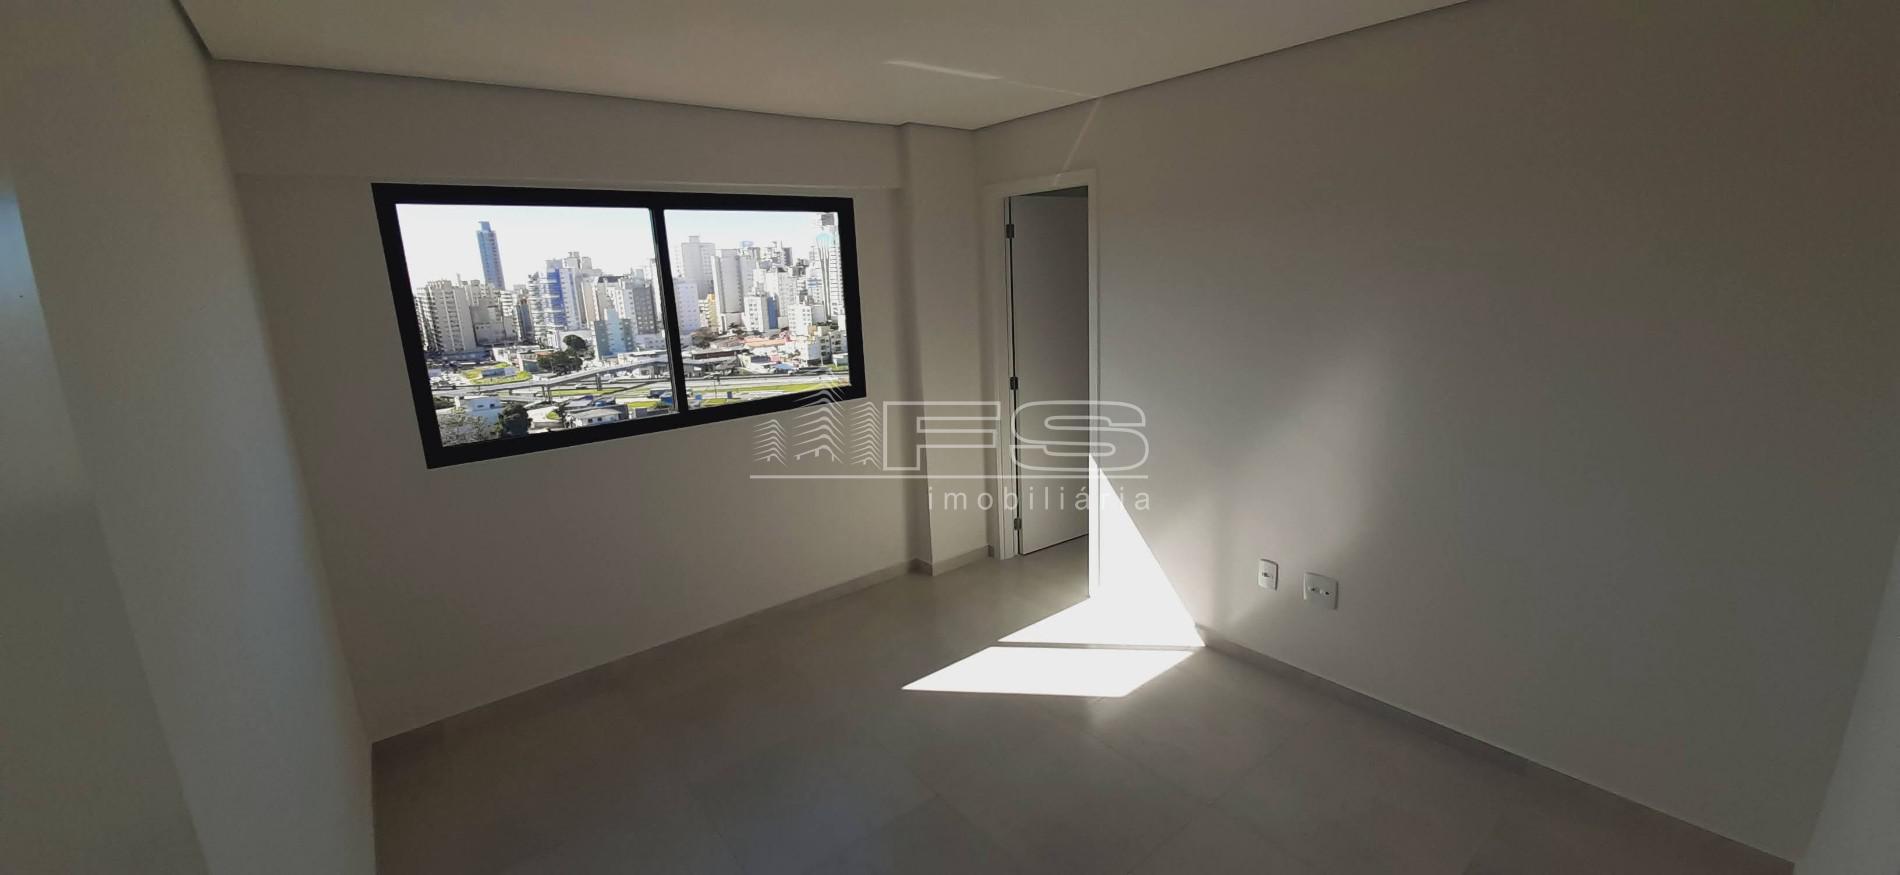 Apartamento com 2 Dormitórios à venda, 69 m² por R$ 695.000,00